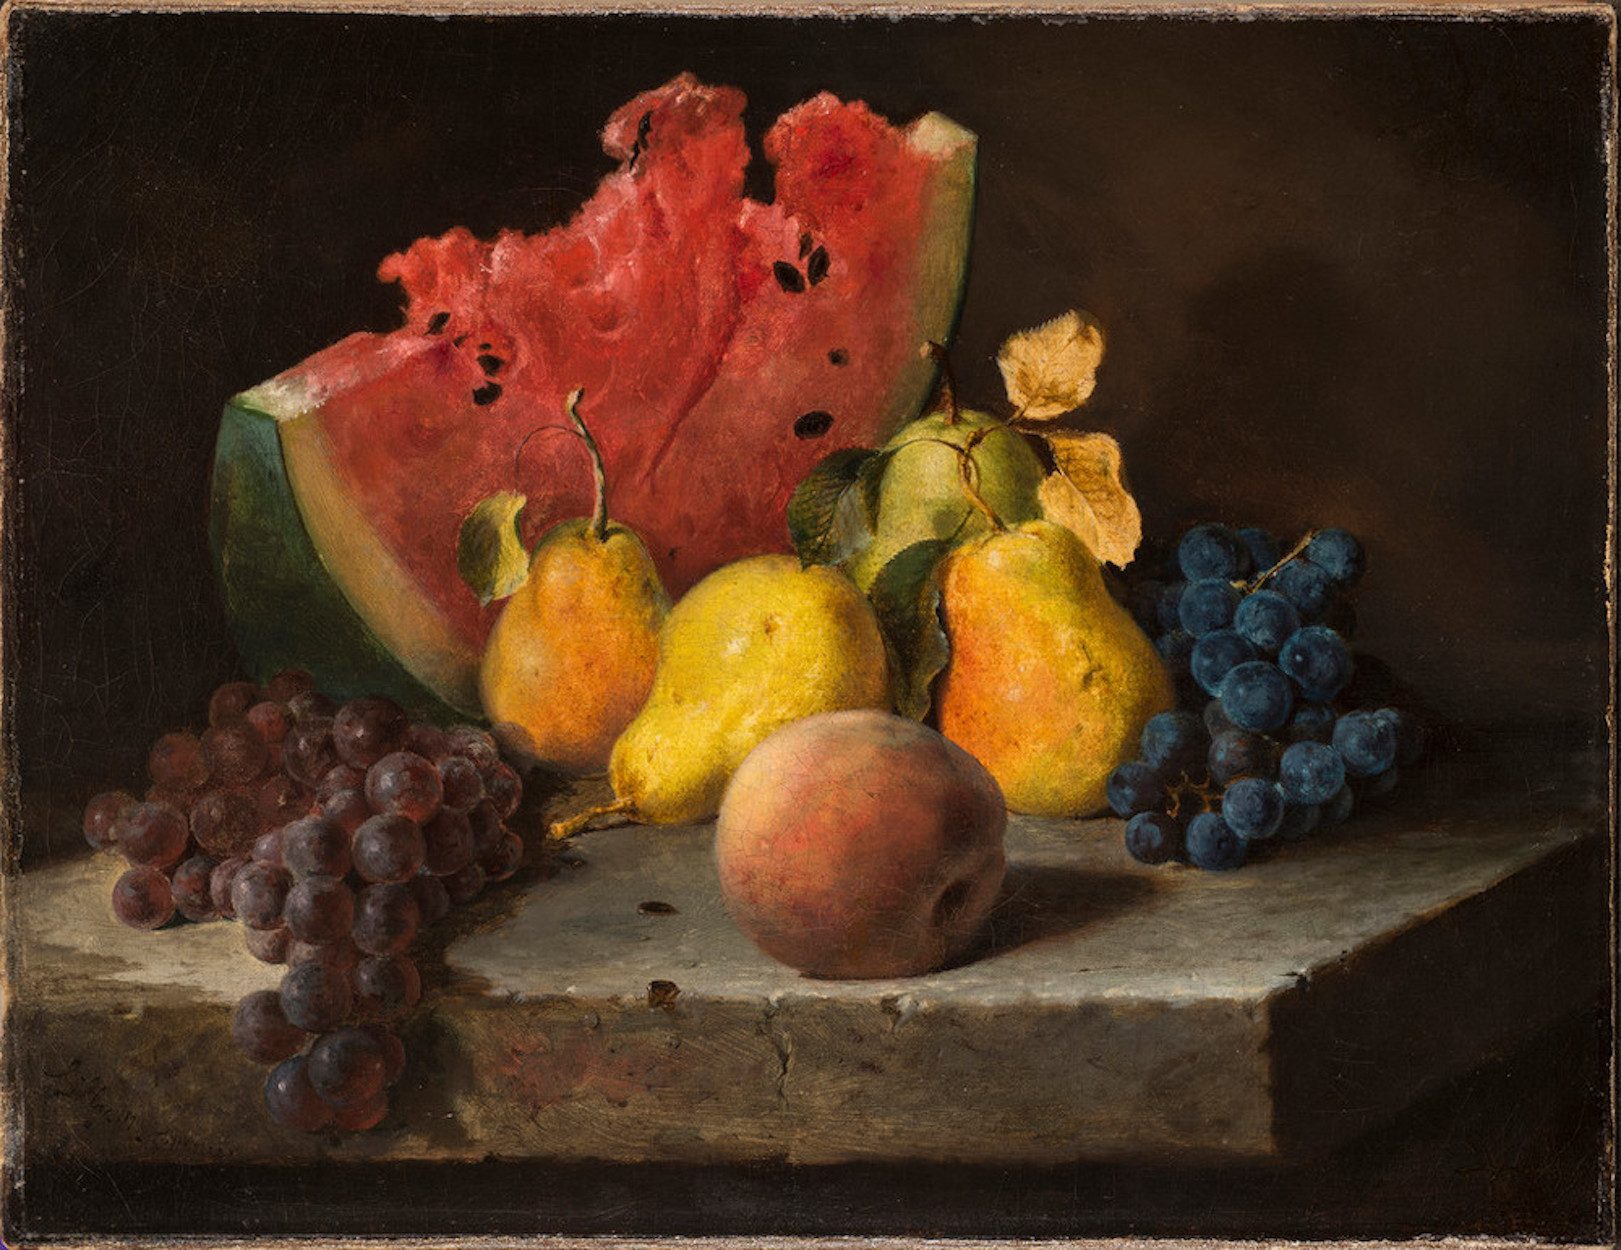 수박, 배, 포도가 있는 정물(Still Life with Watermelon, Pears, Grapes) by Lilly Martin Spencer - 1860년 - 33 x 43.5 cm 